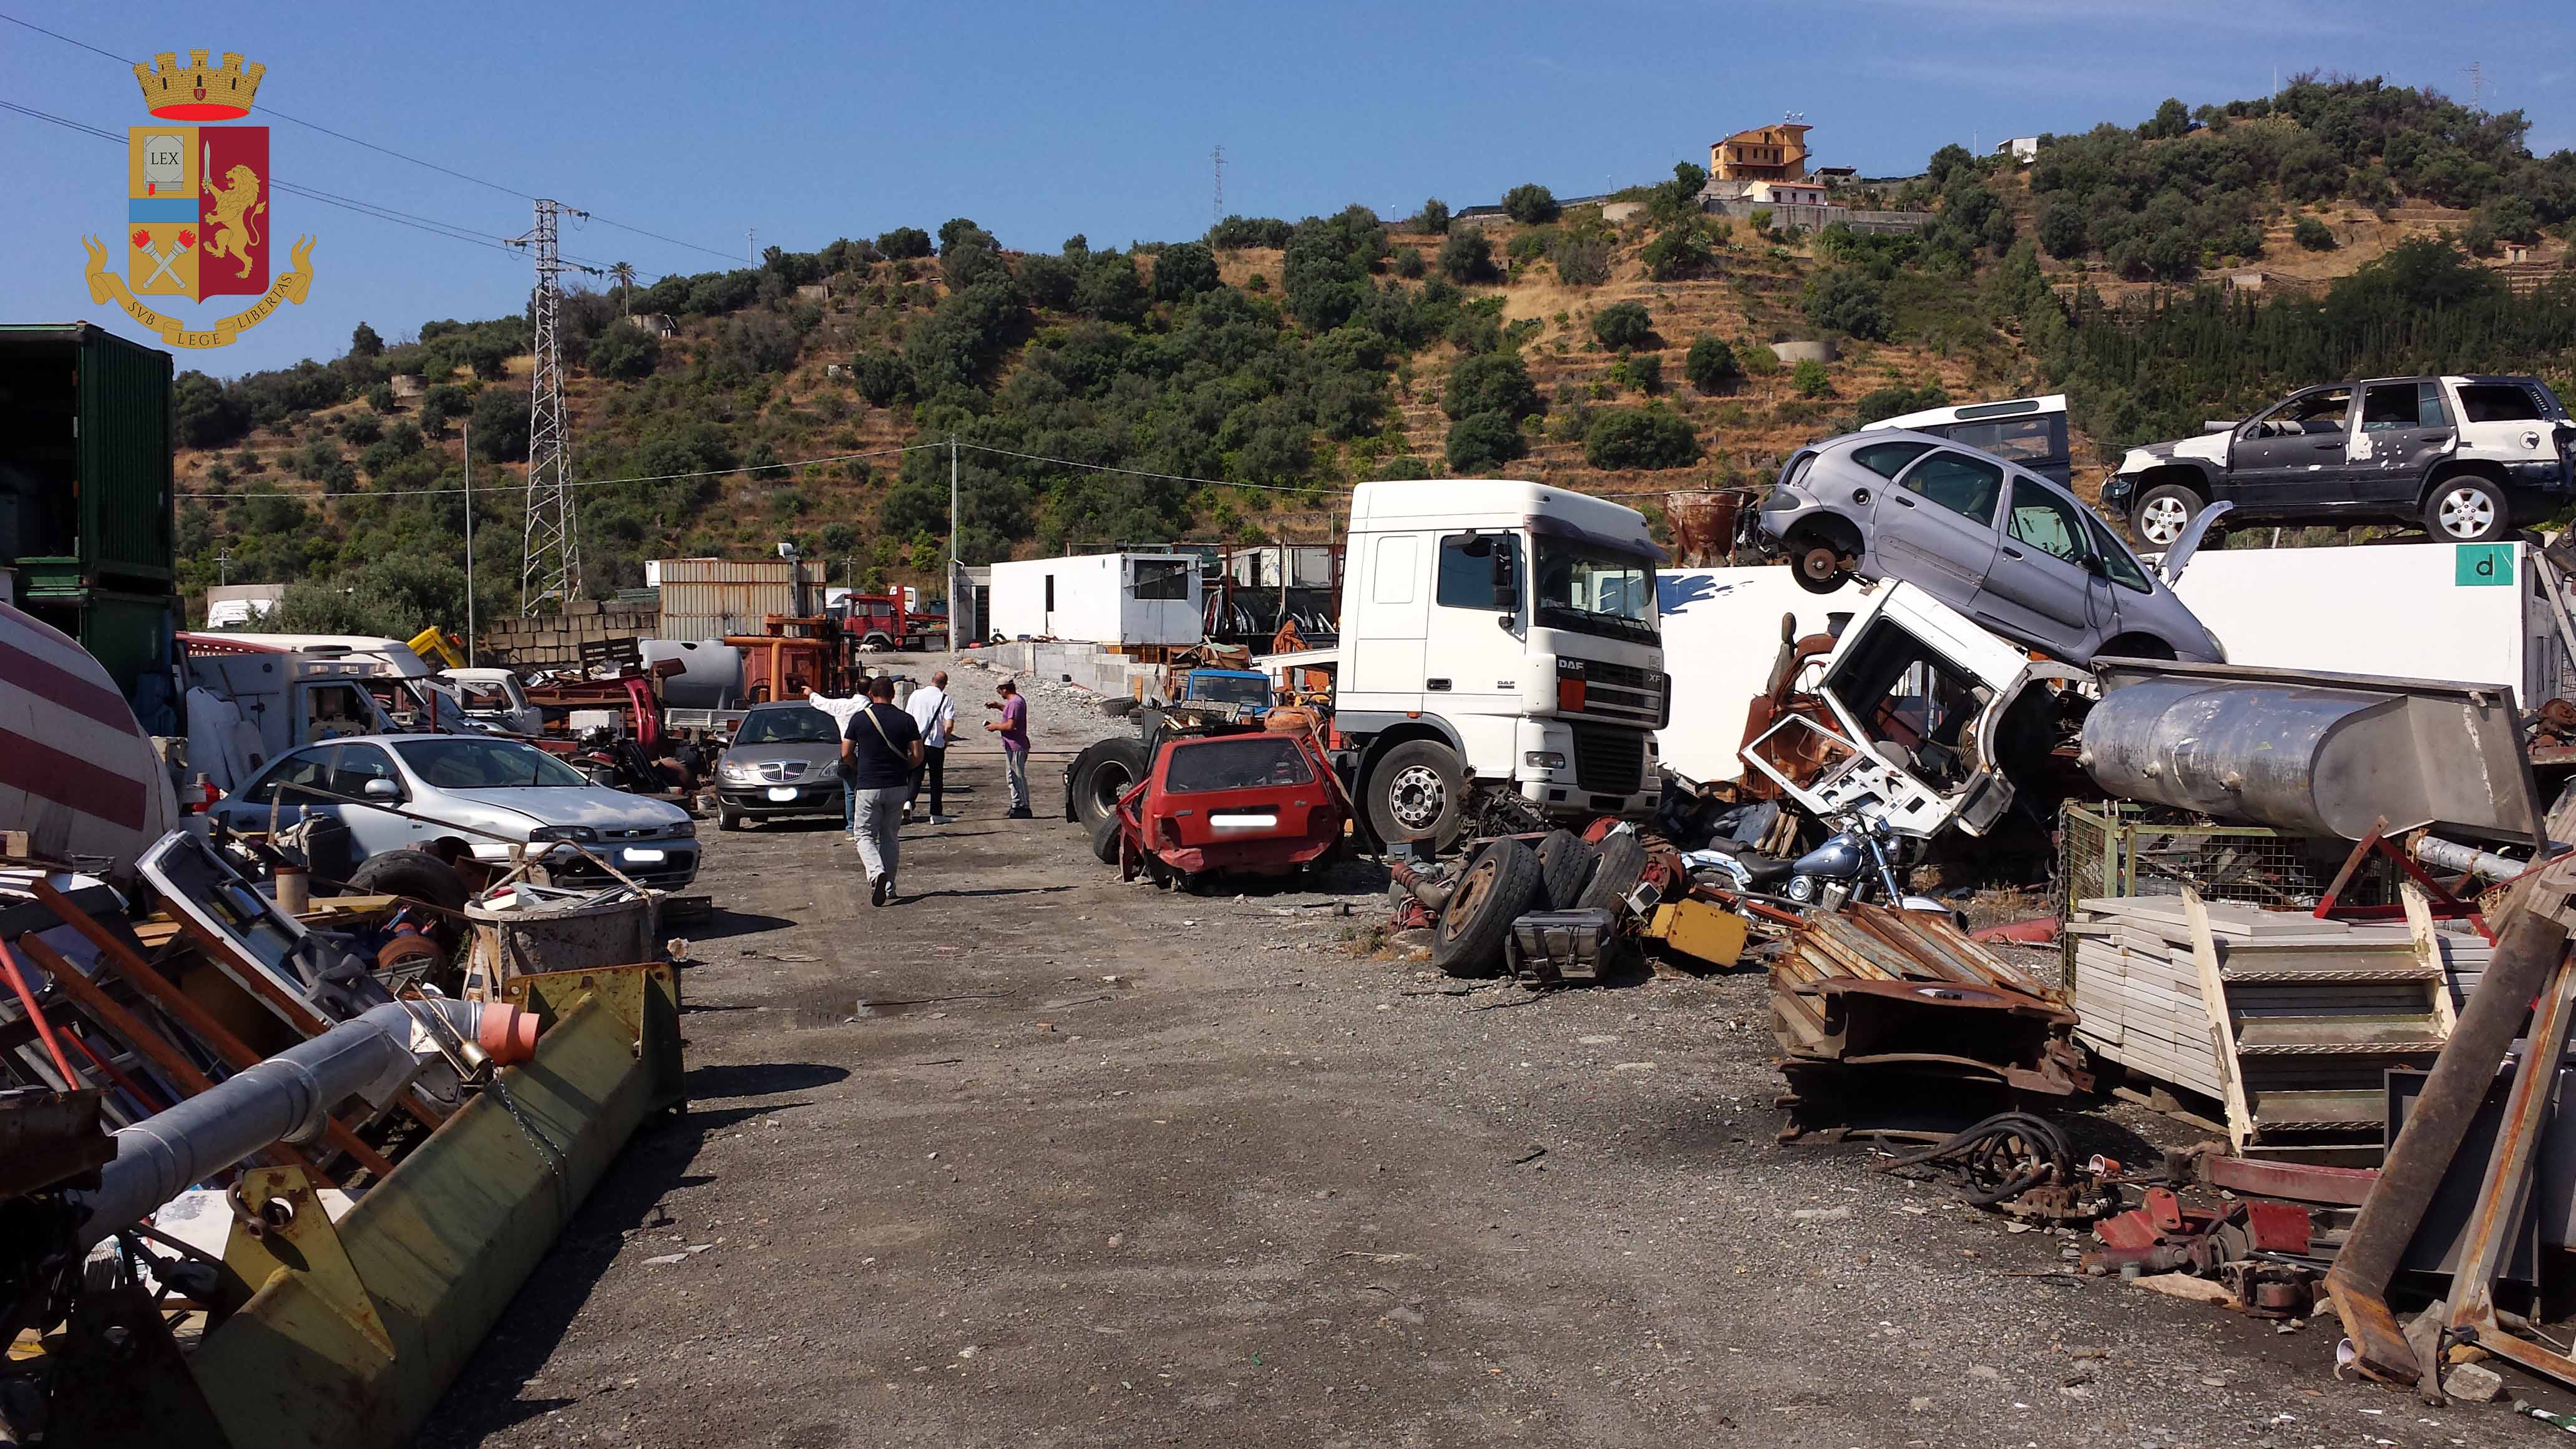 La Polizia di Stato sequestra un’area abusivamente utilizzata per recupero rifiuti pericolosi e veicoli dismessi